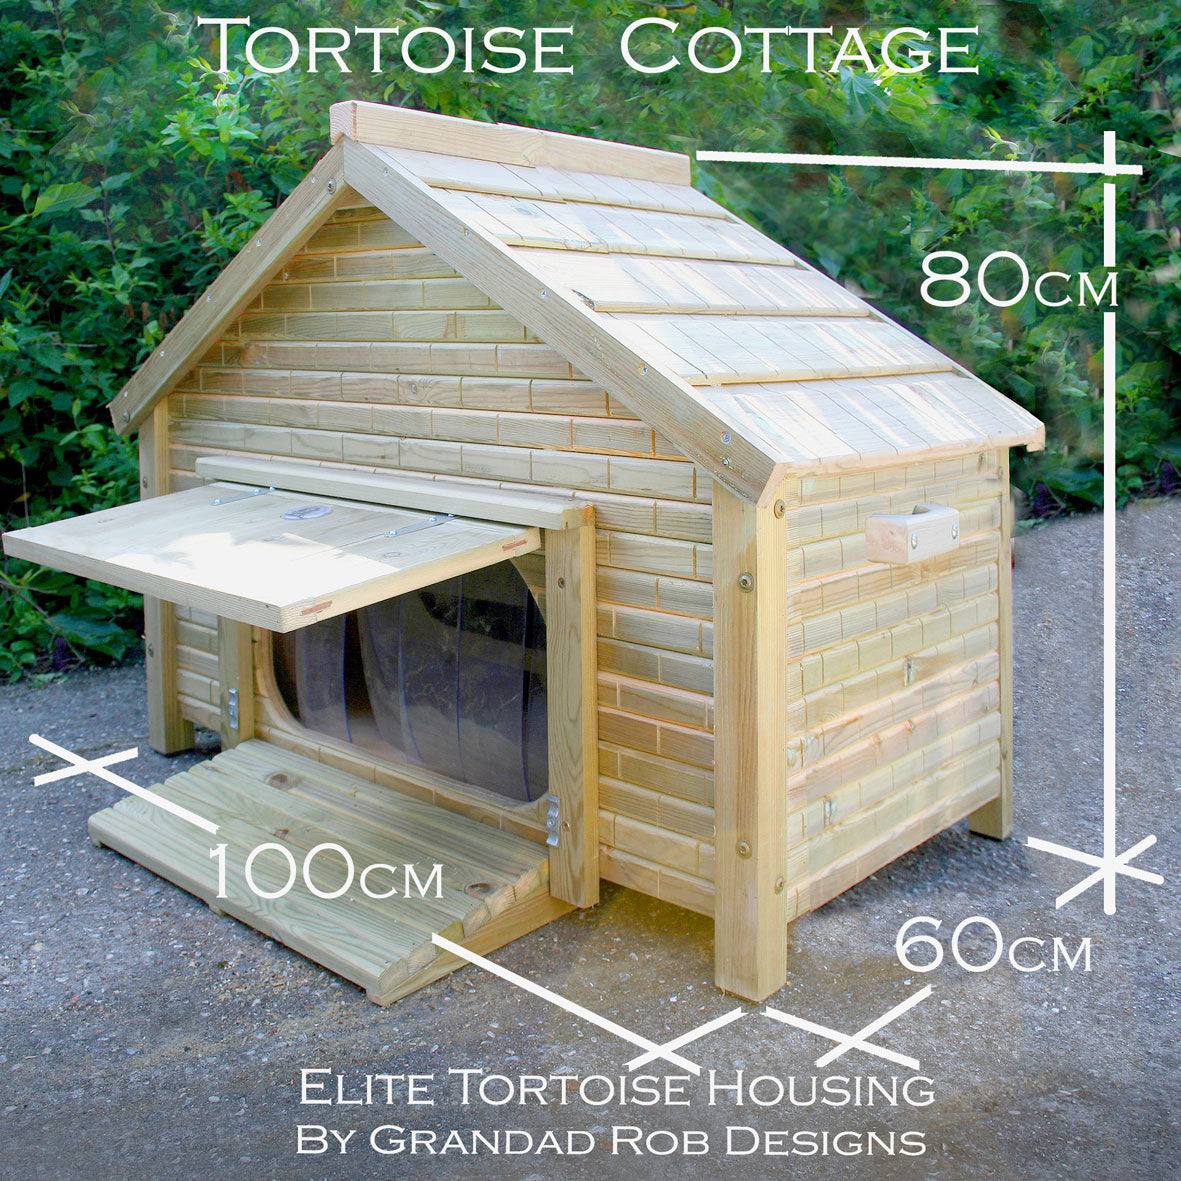 Tortoise Cottage